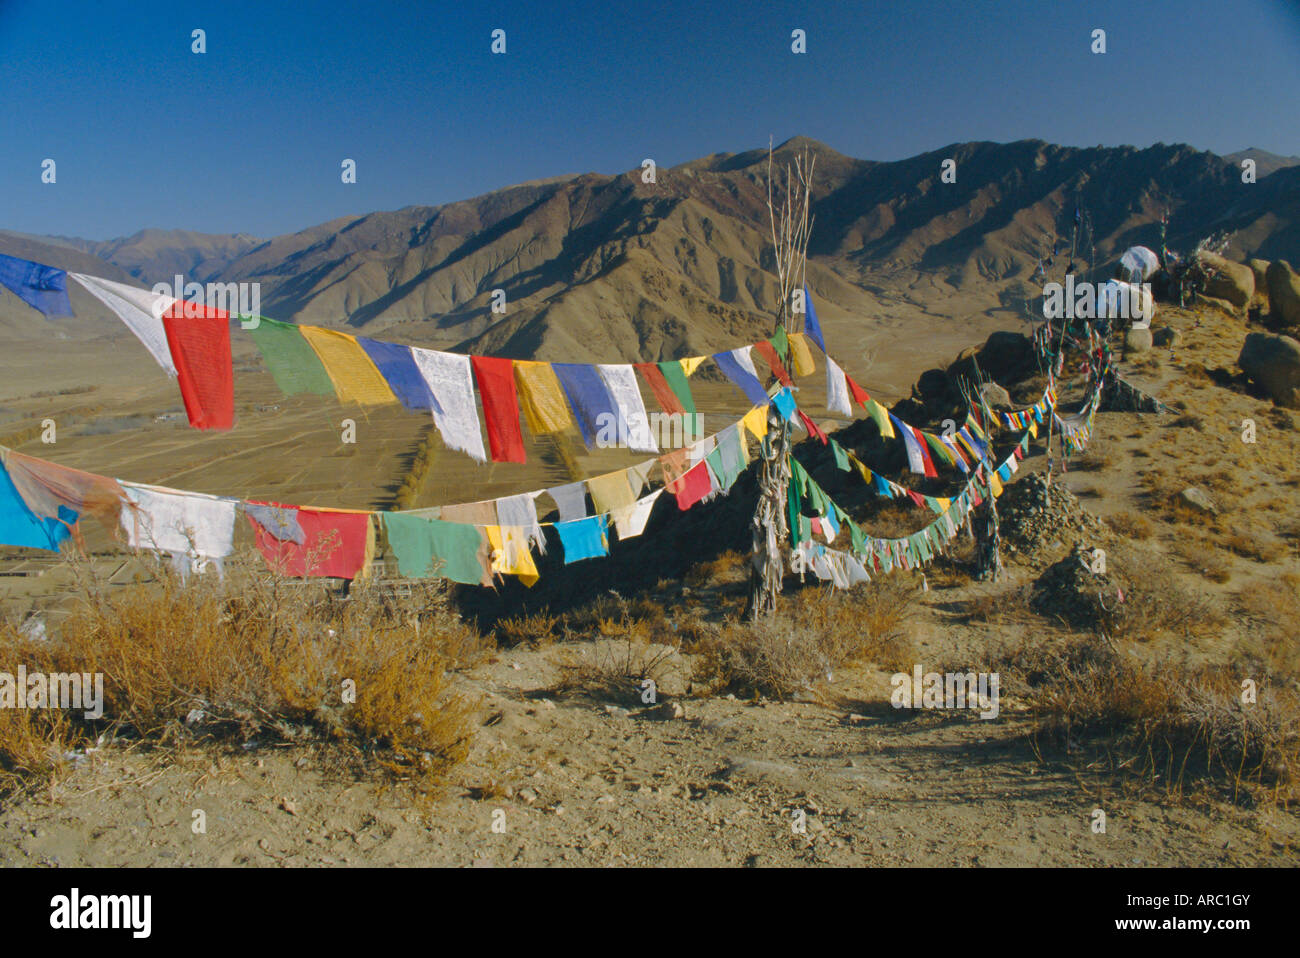 Buddhist prayer flags, Samye monastery, Tibet, China Stock Photo